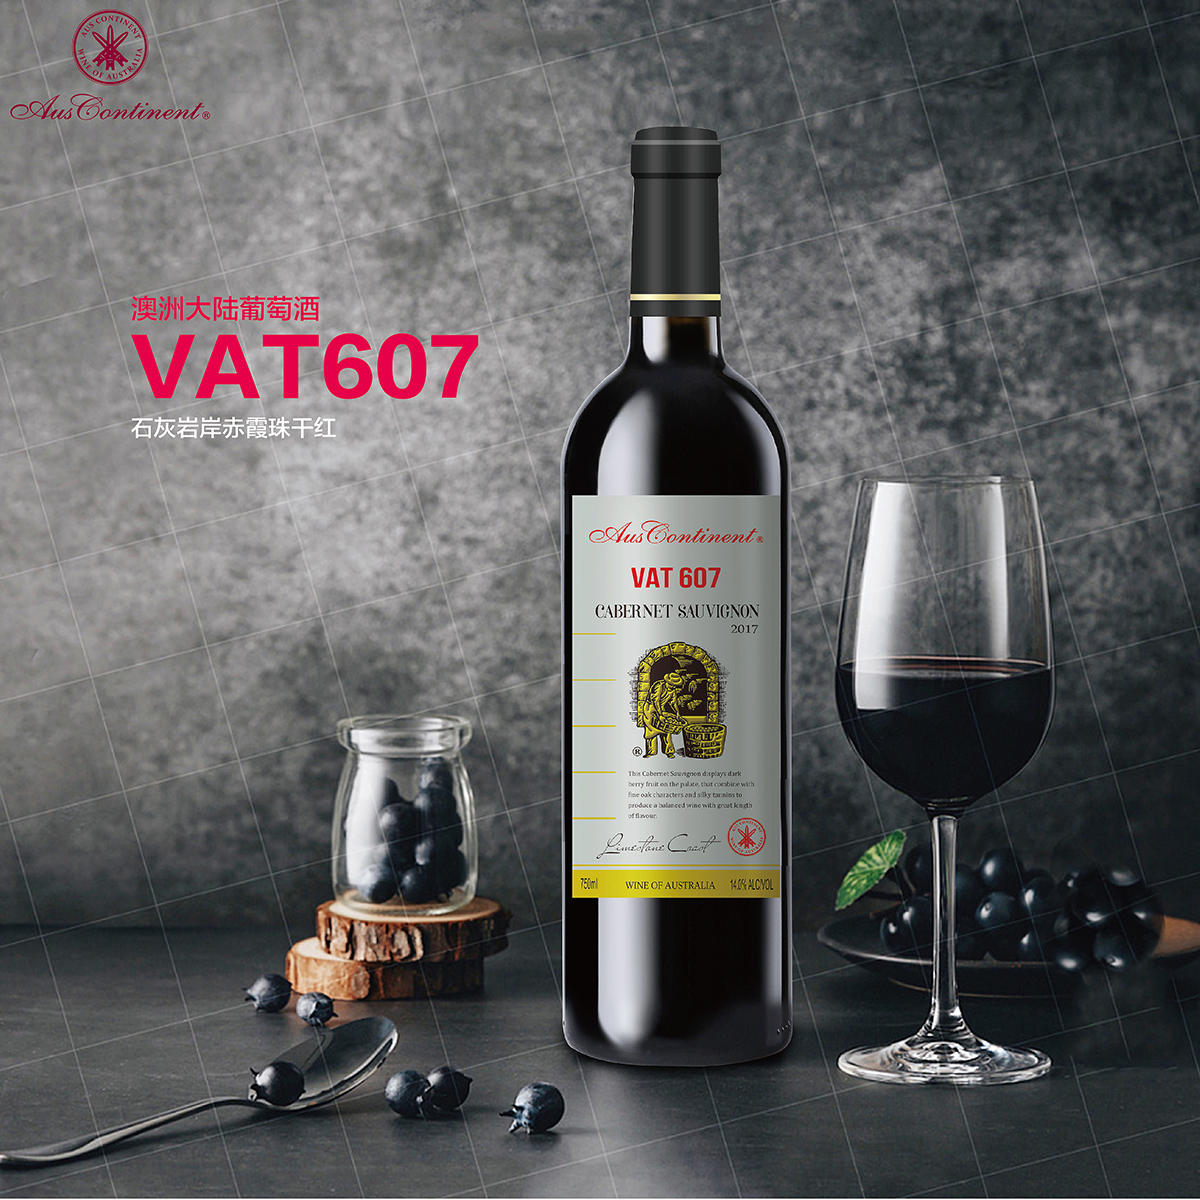 澳大利亚石灰岩海岸澳洲大陆酒庄赤霞珠VAT 607干红葡萄酒红酒